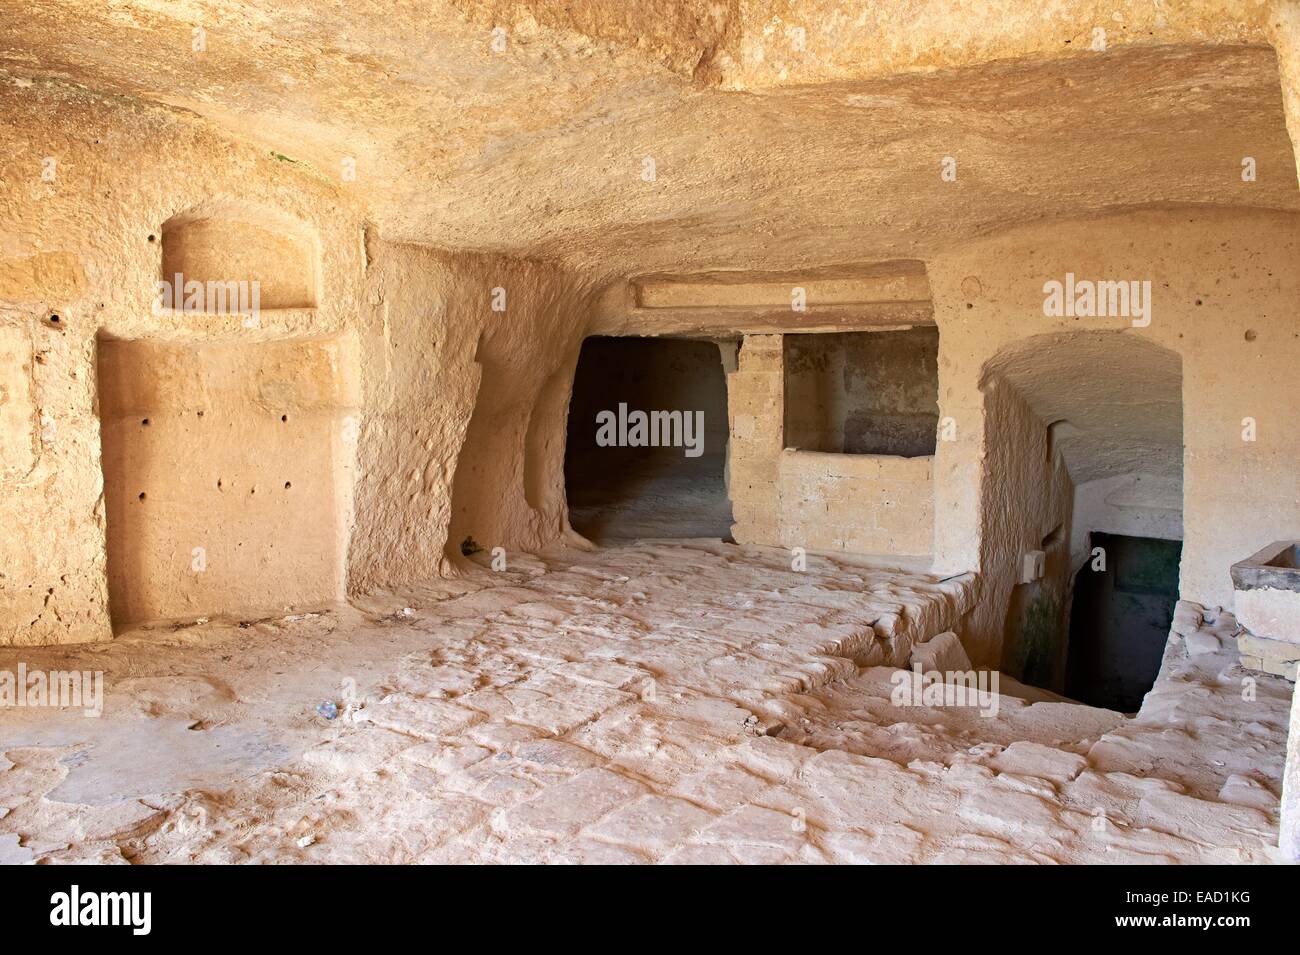 L'intérieur d'un ancien habitat troglodytique, connu sous le nom de Sassi, UNESCO World Heritage site, Matera, Basilicate, Italie Banque D'Images